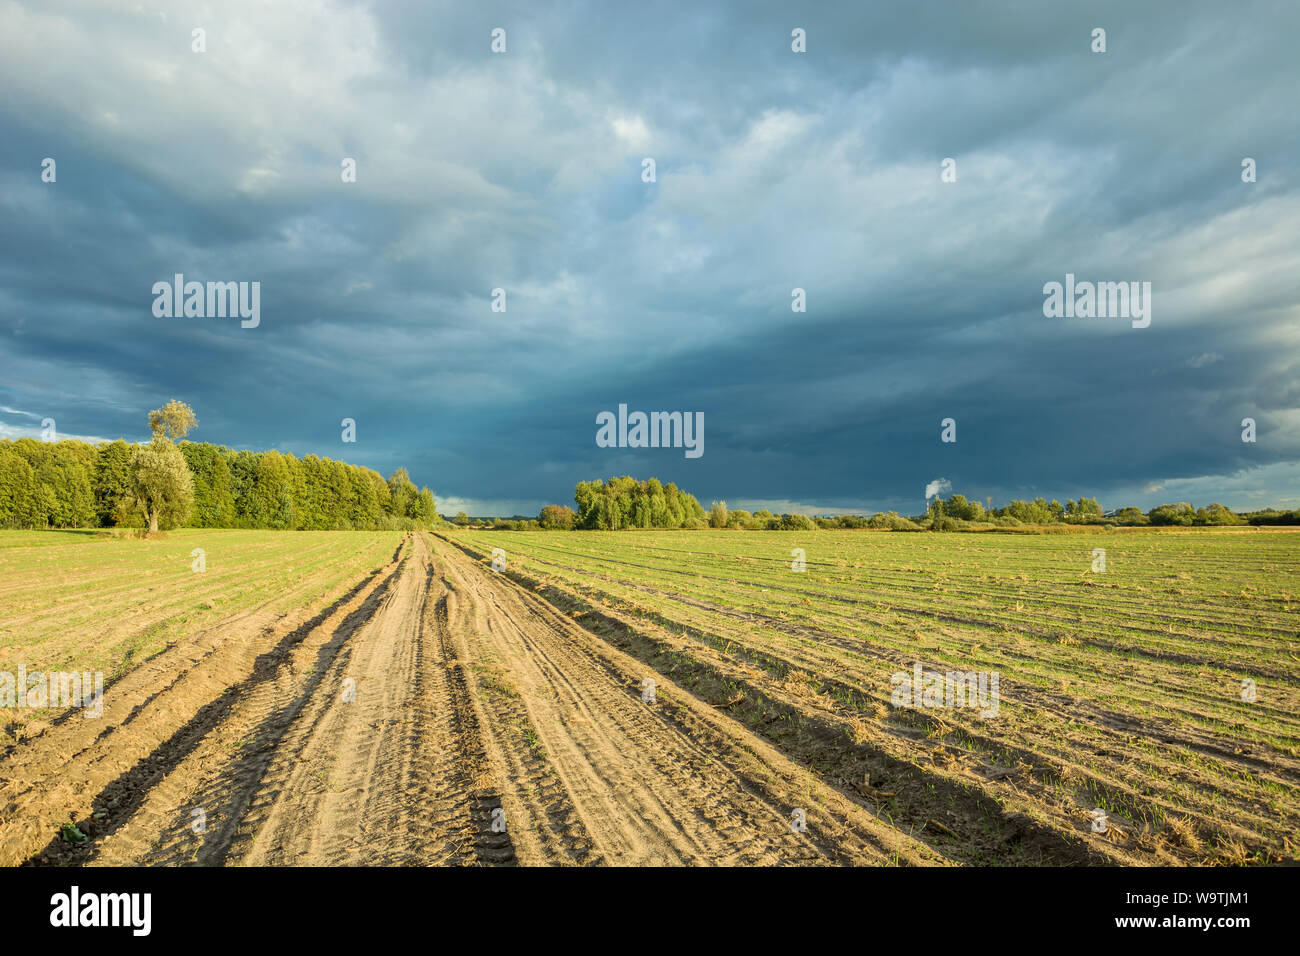 Strada sterrata attraverso i campi seminati, alberi all'orizzonte e piovosa scure nuvole nel cielo. Nowiny, Polonia Foto Stock